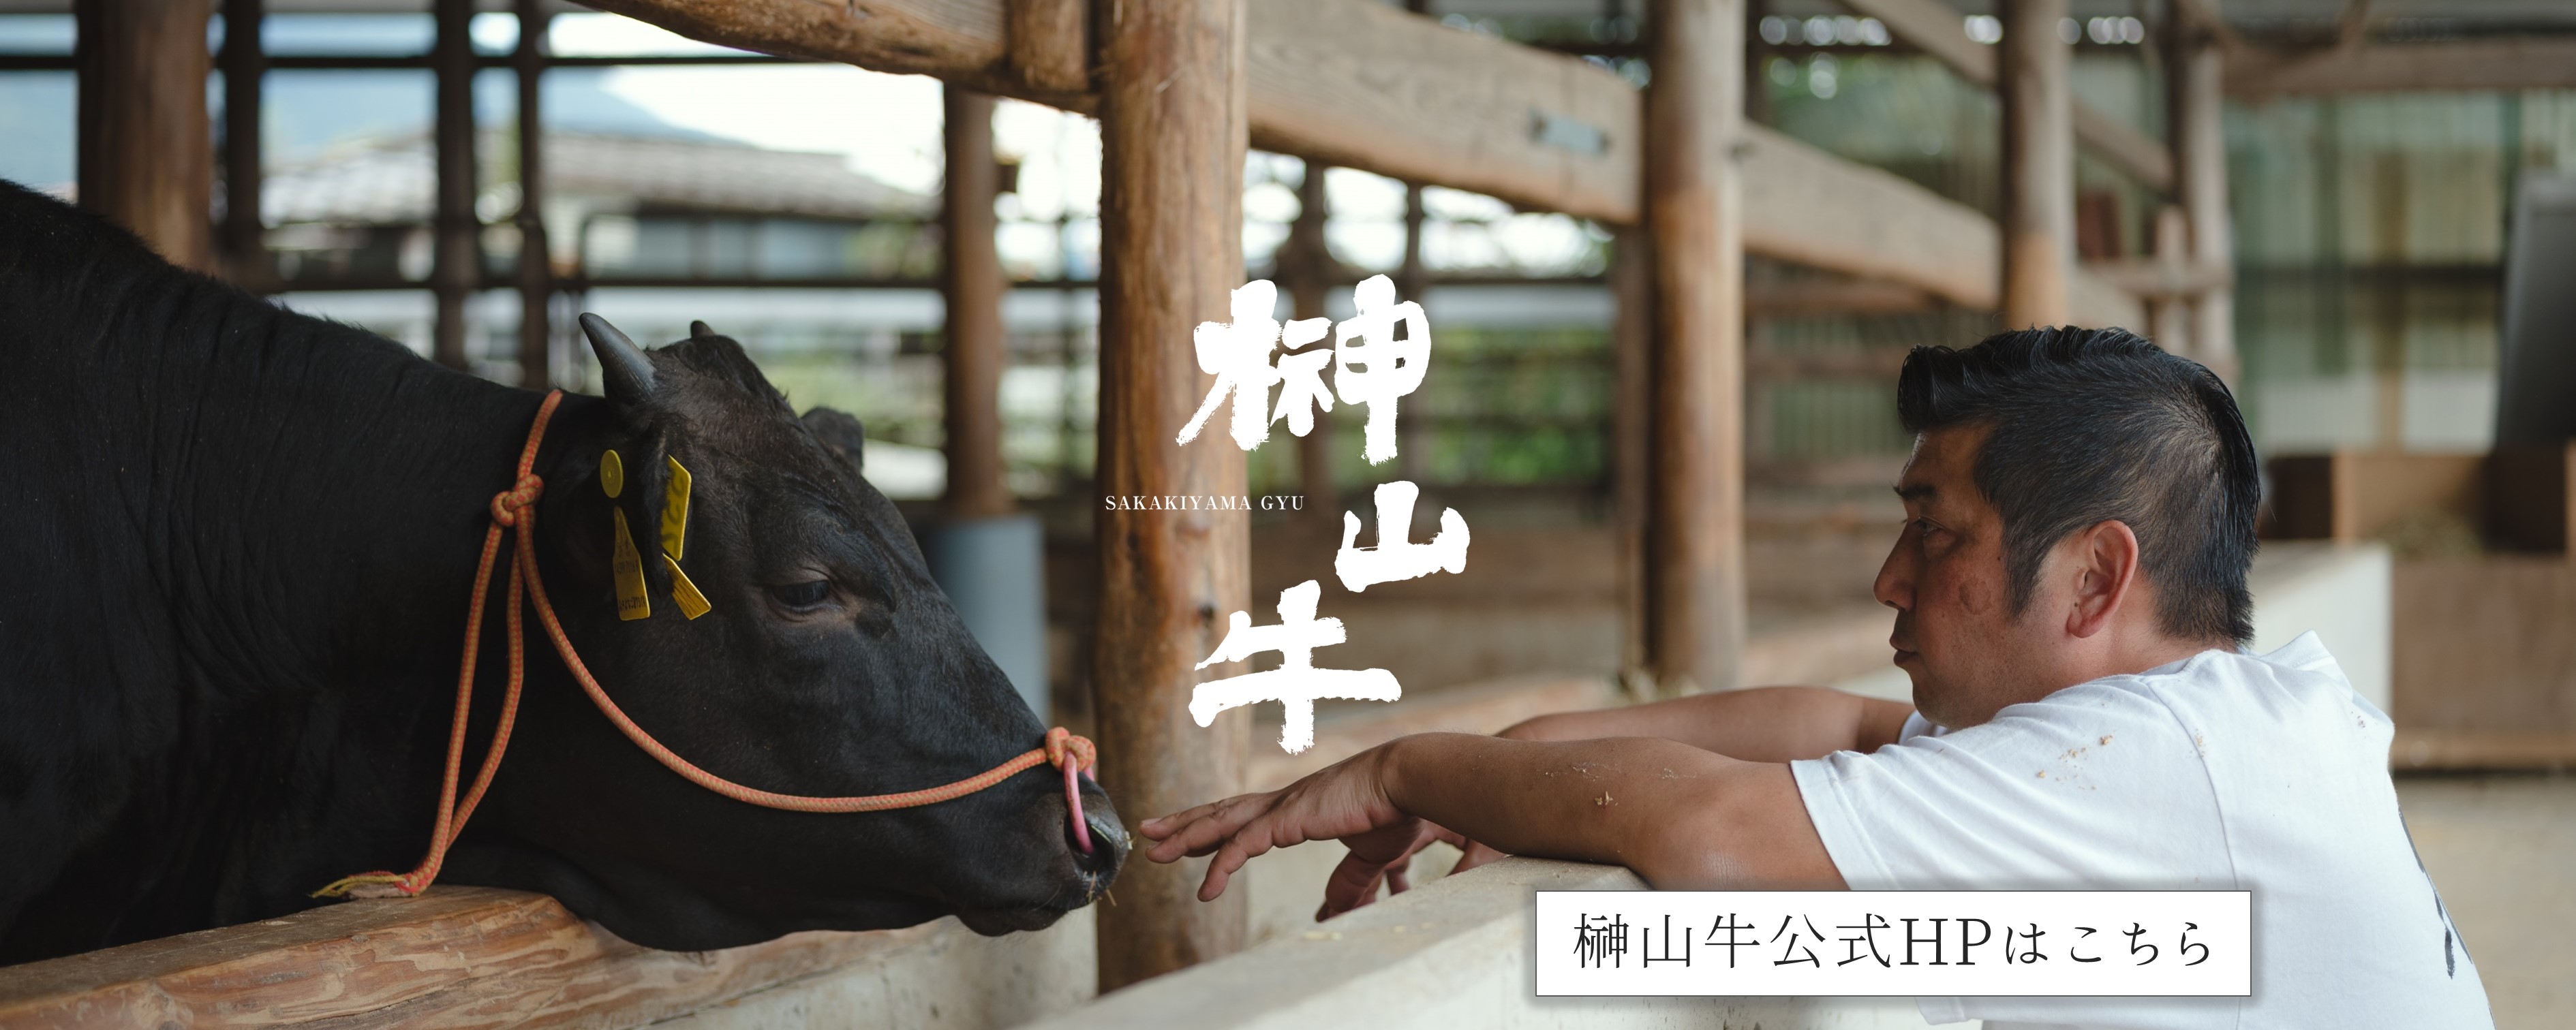 広島牛最高級ブランド「榊山牛」